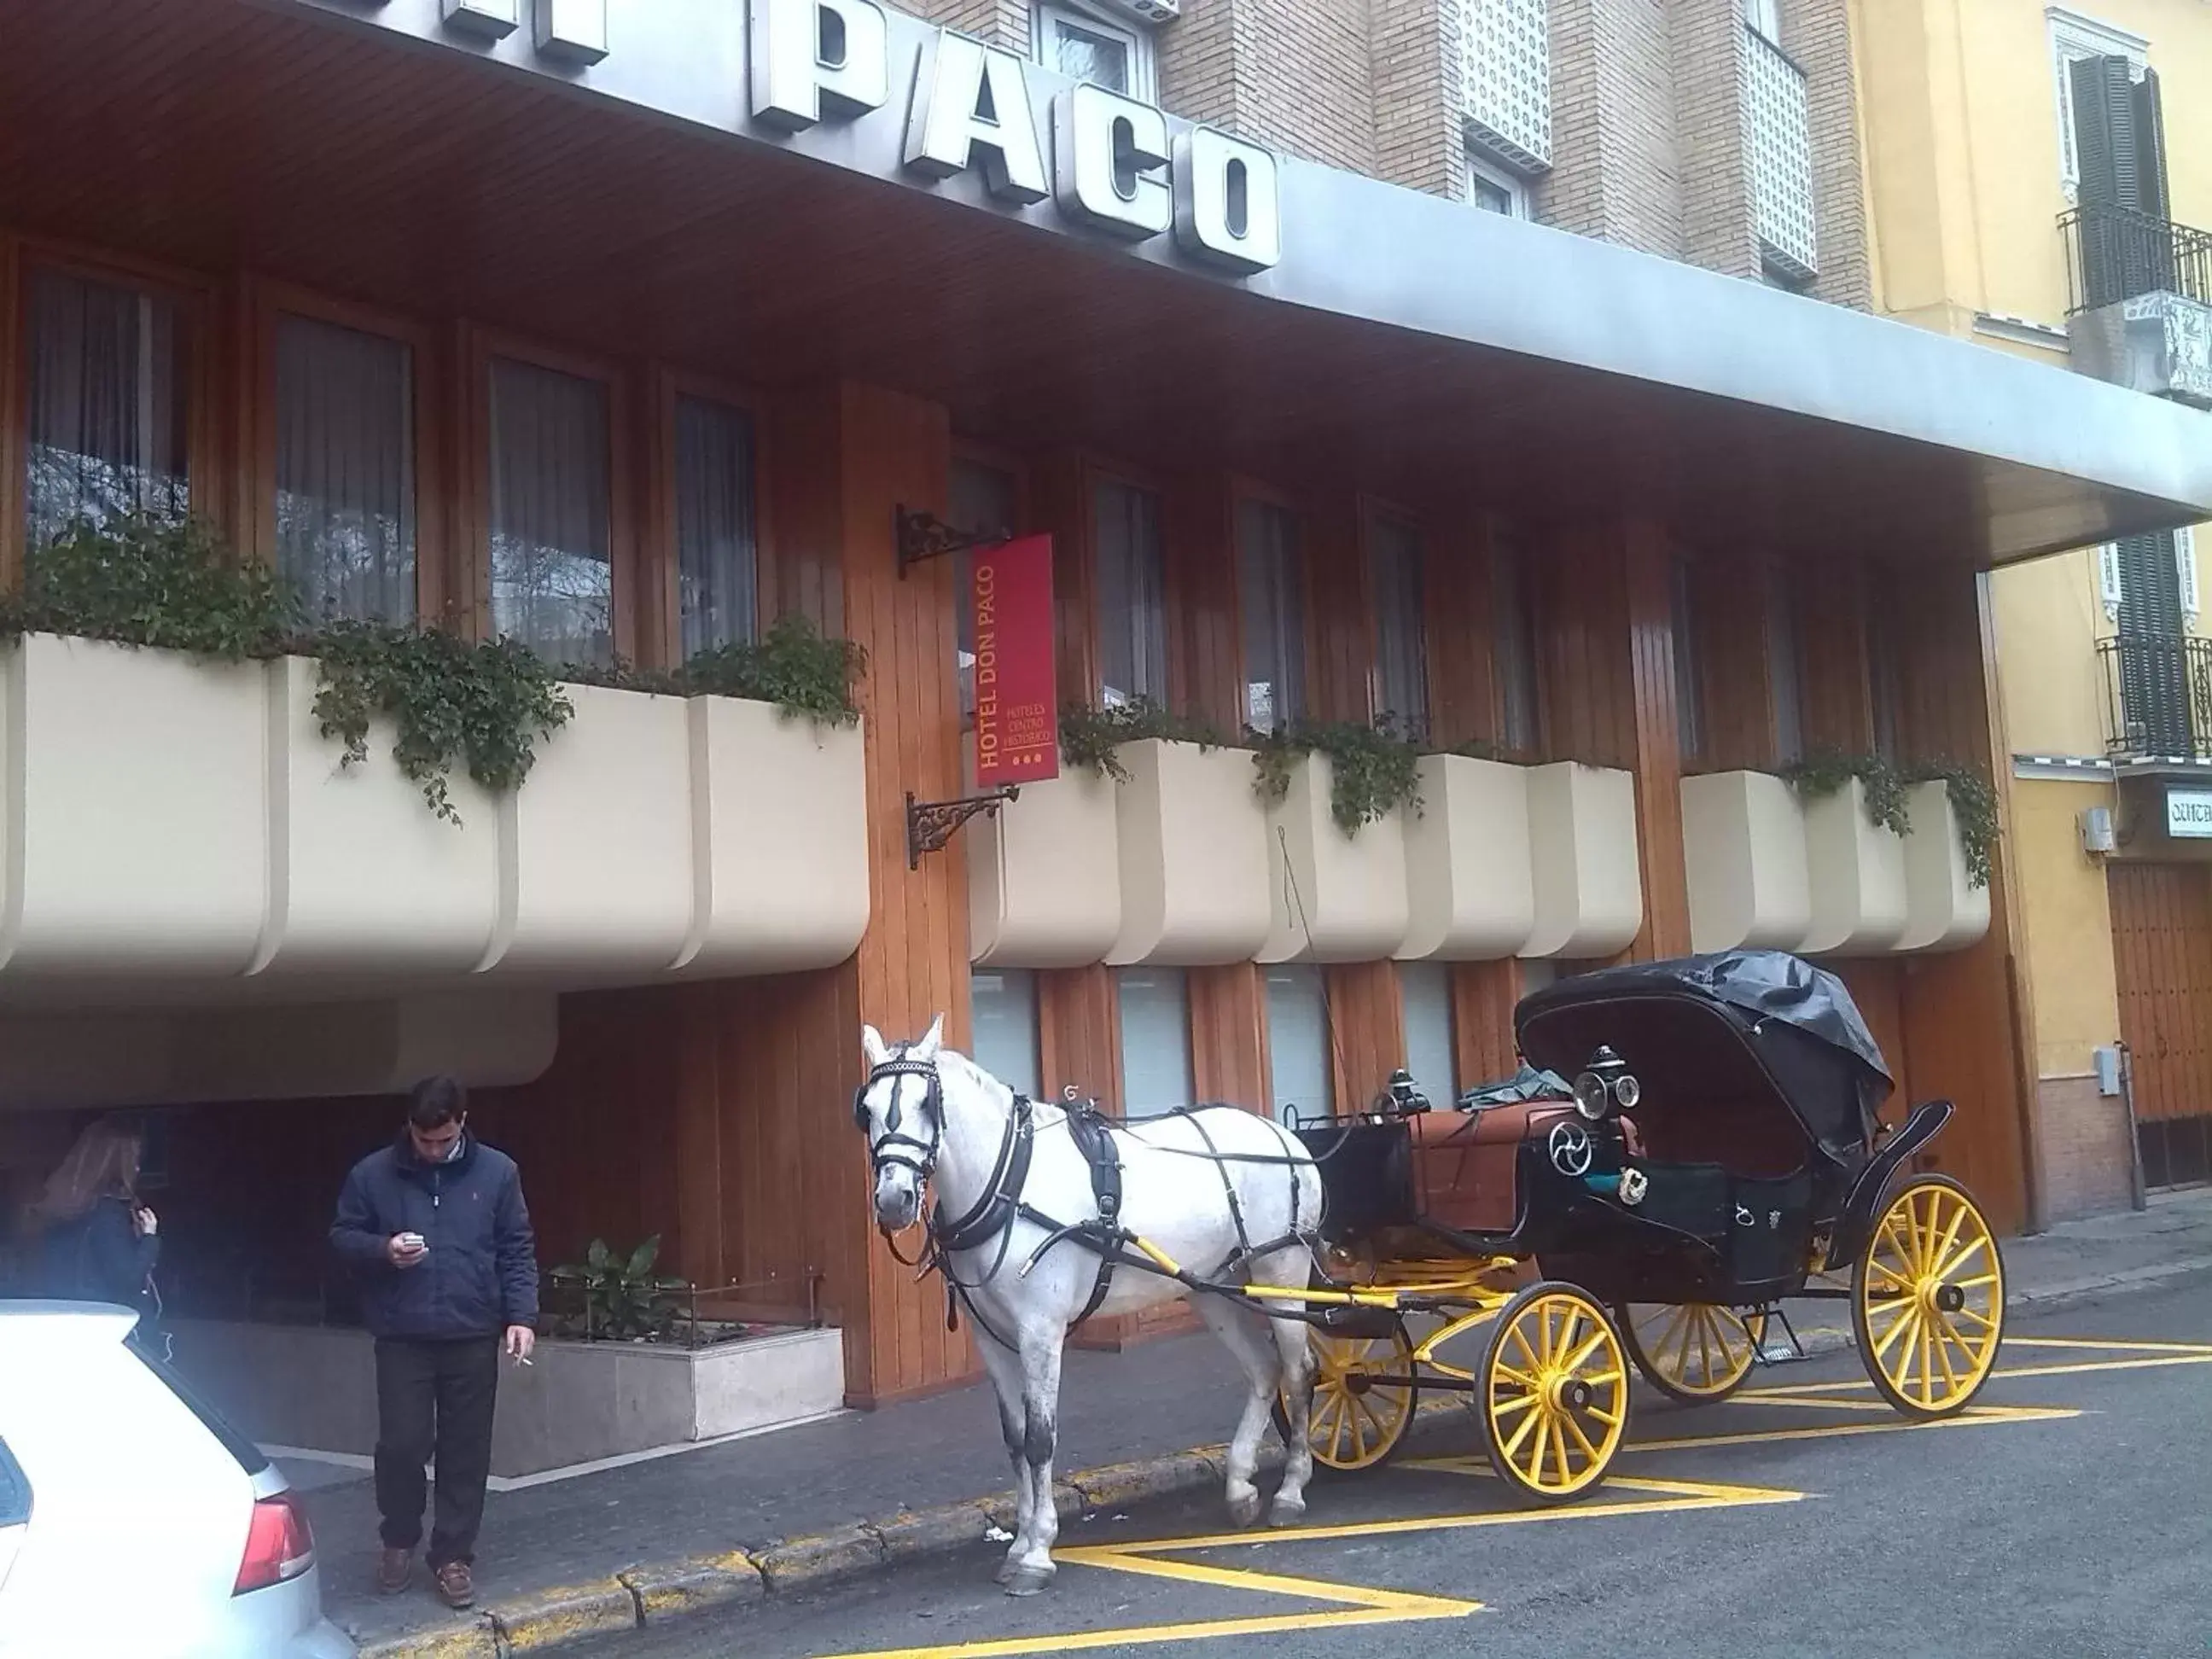 Facade/entrance in Hotel Don Paco